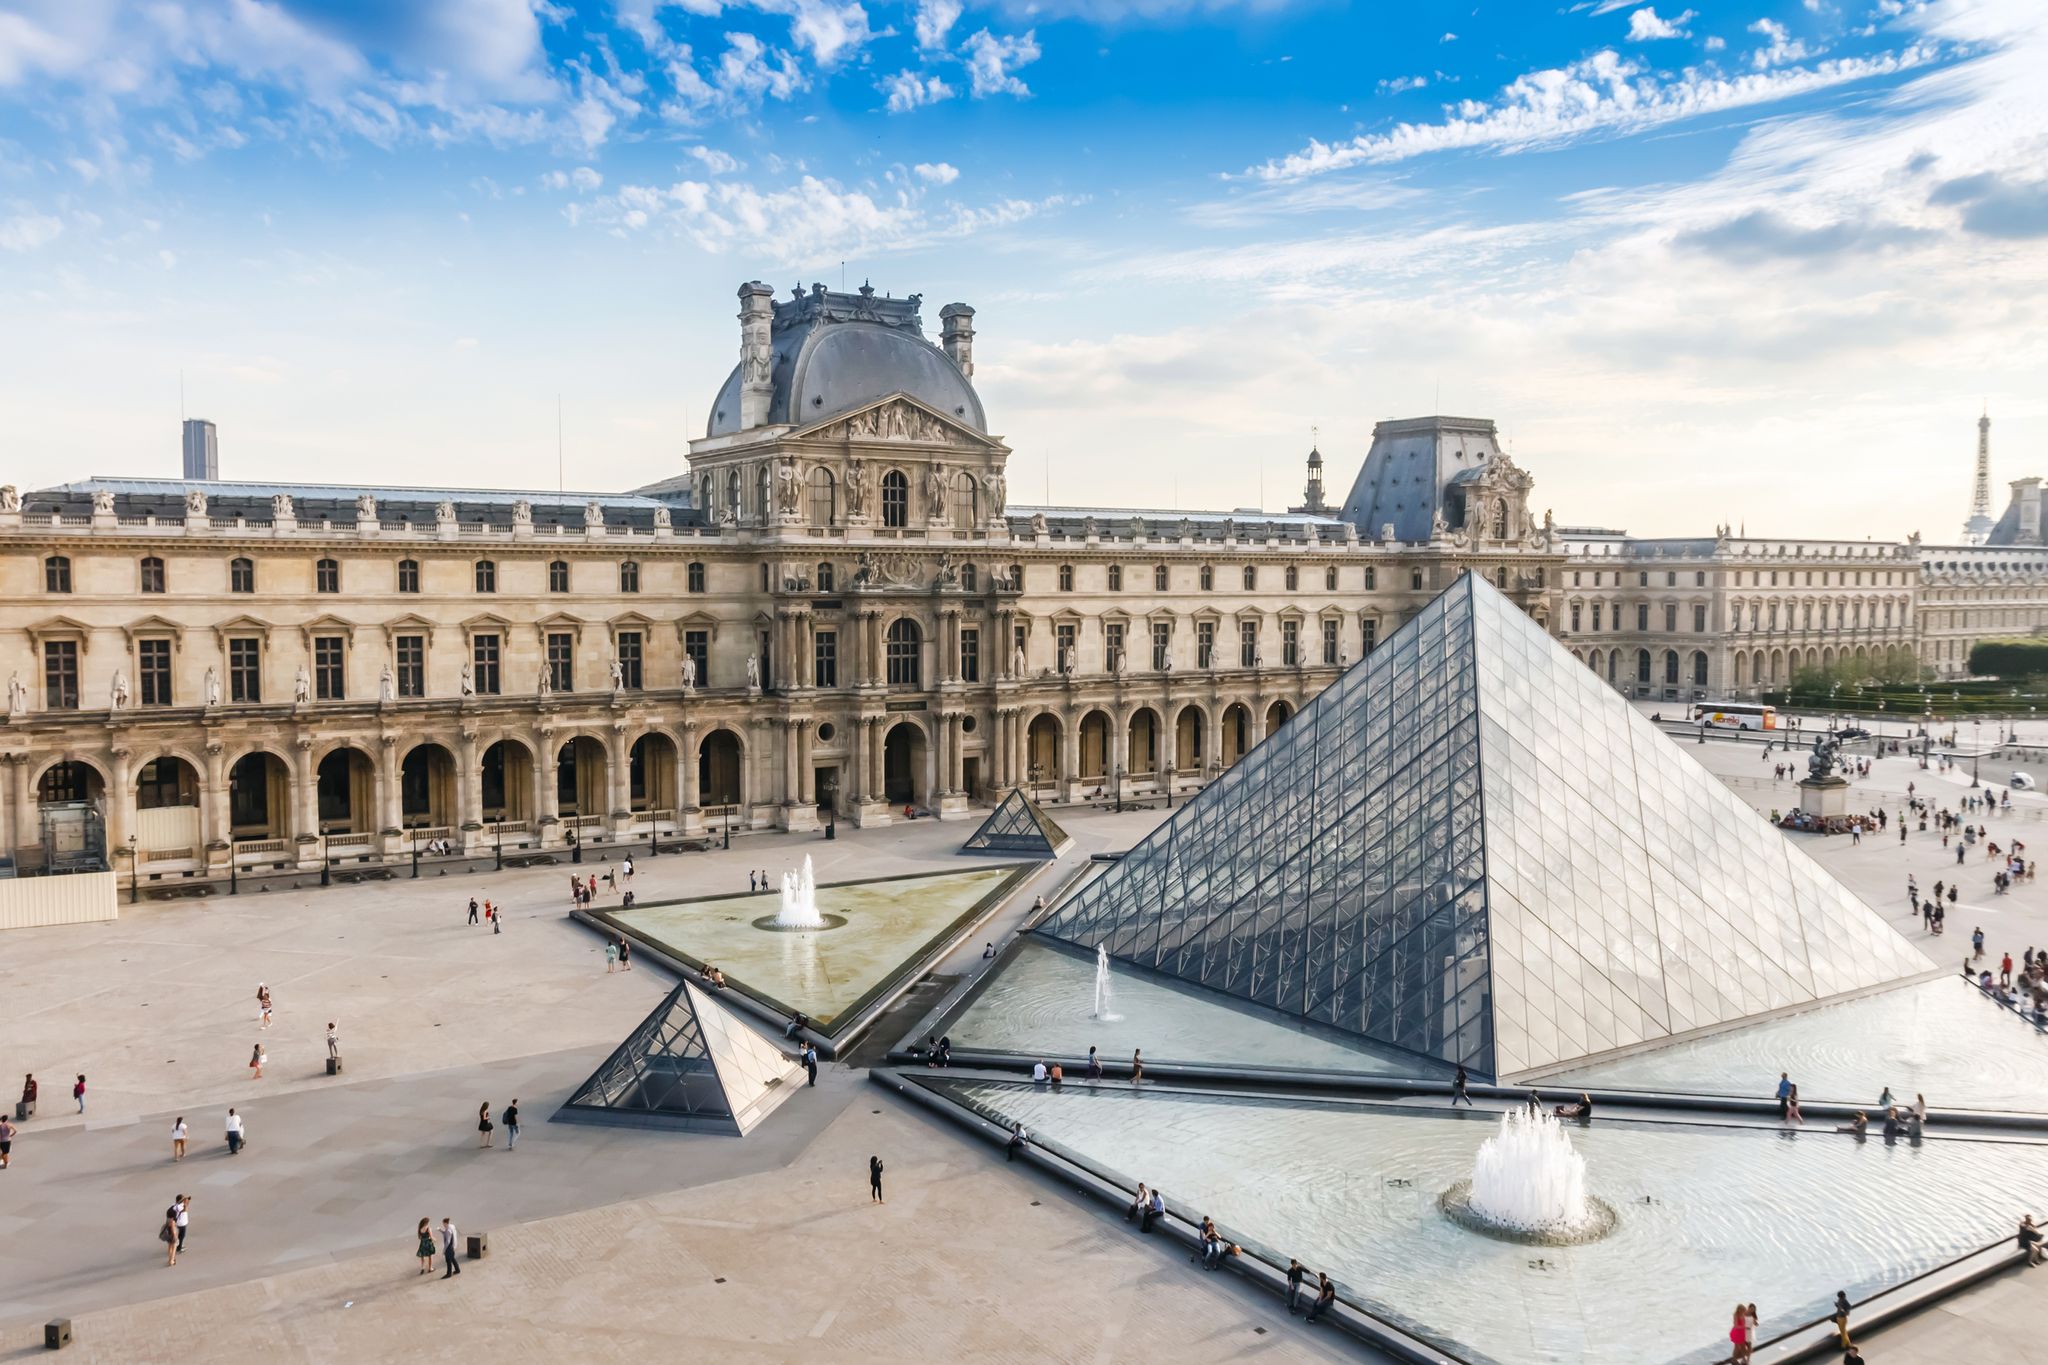 Μουσείο του Λούβρου (Musée du Louvre) - Παρίσι | TopTraveller